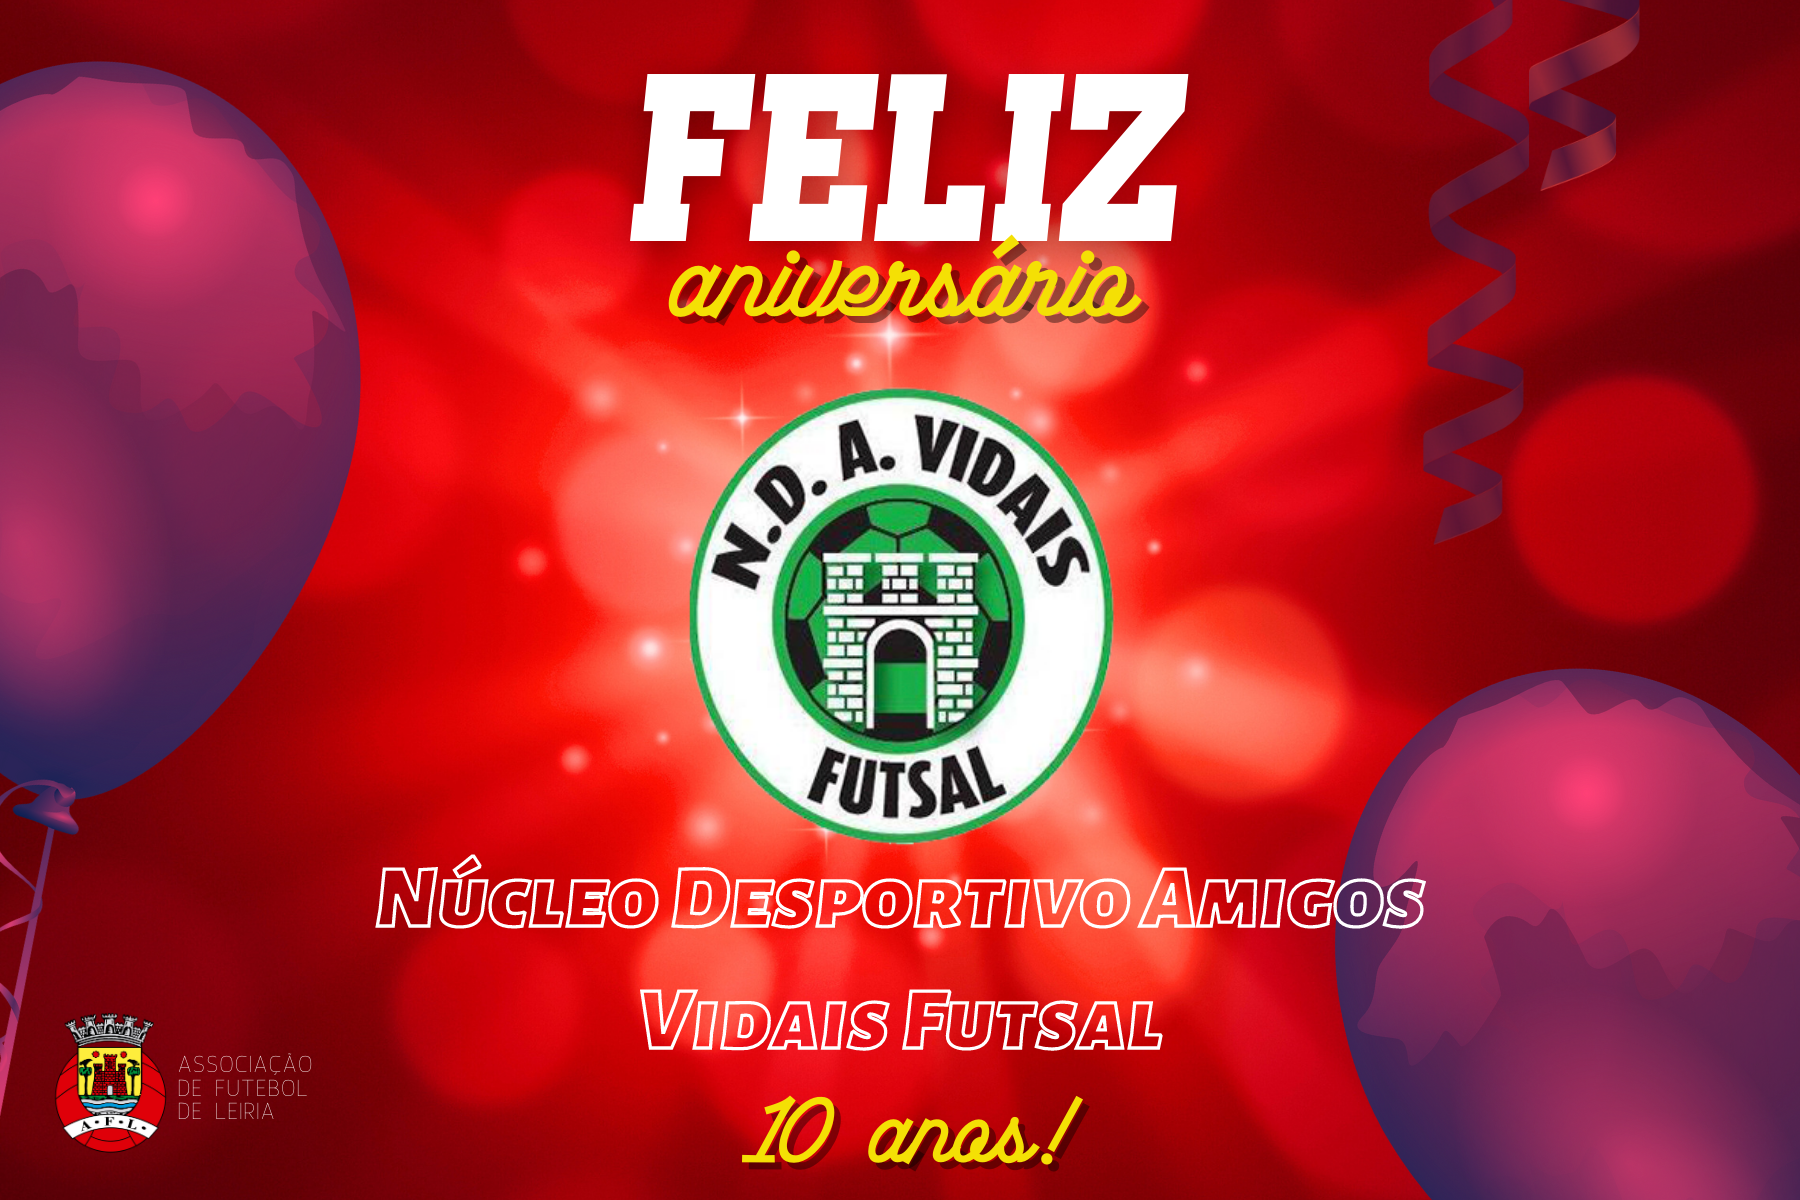 Núcleo Desportivo Amigos Vidais Futsal está de parabéns!